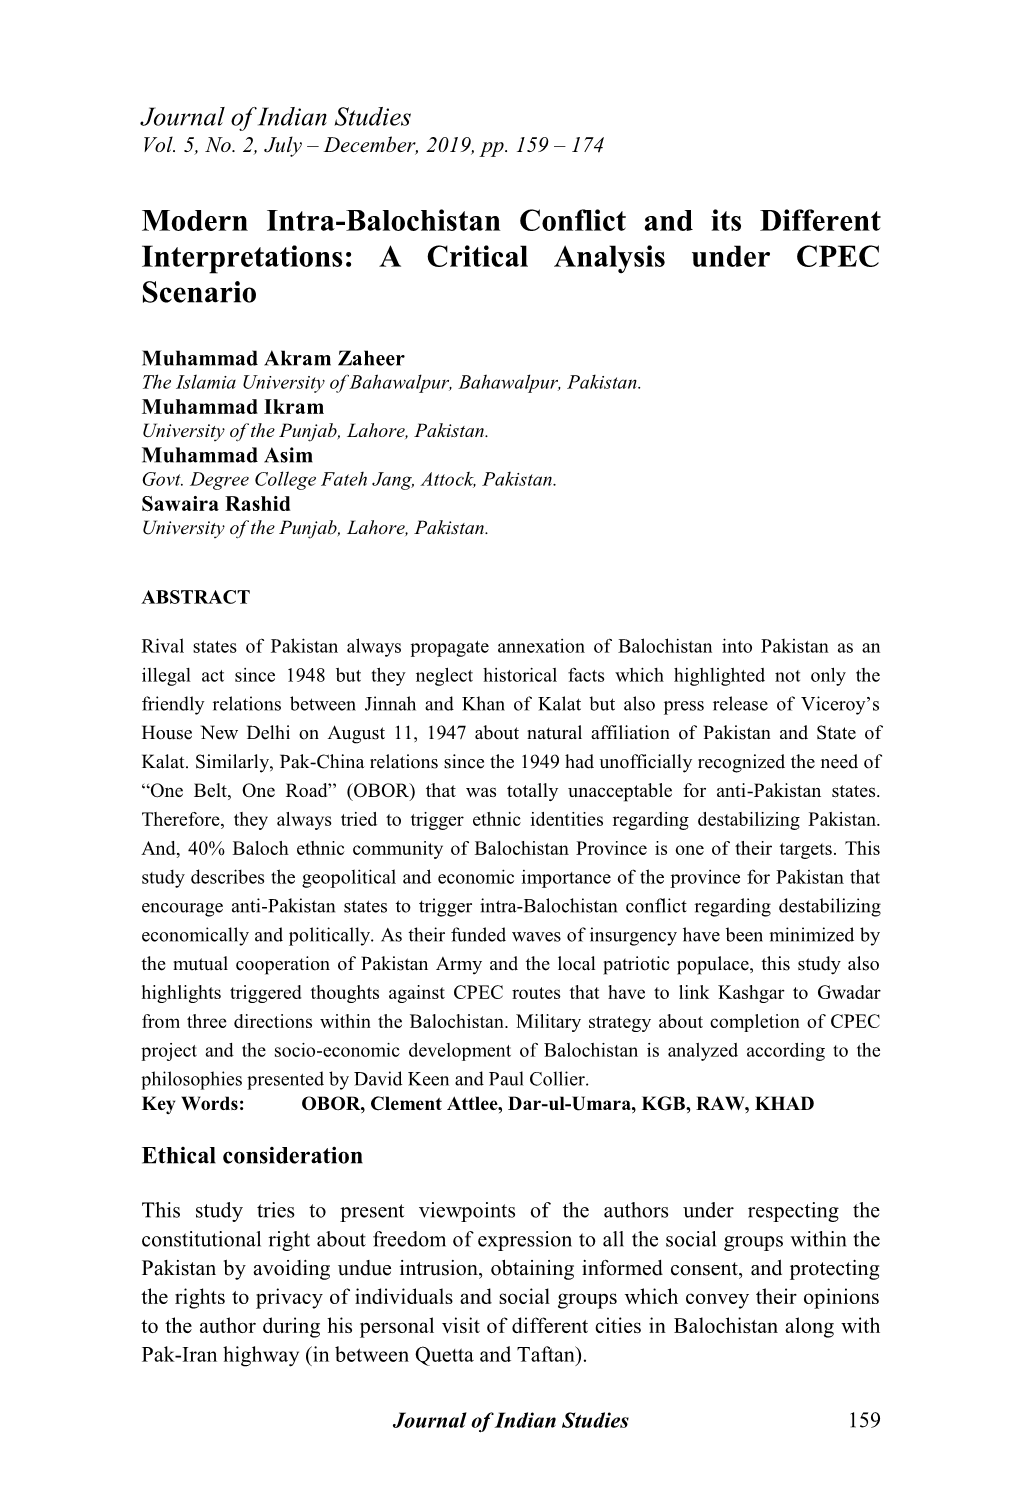 A Critical Analysis Under CPEC Scenario